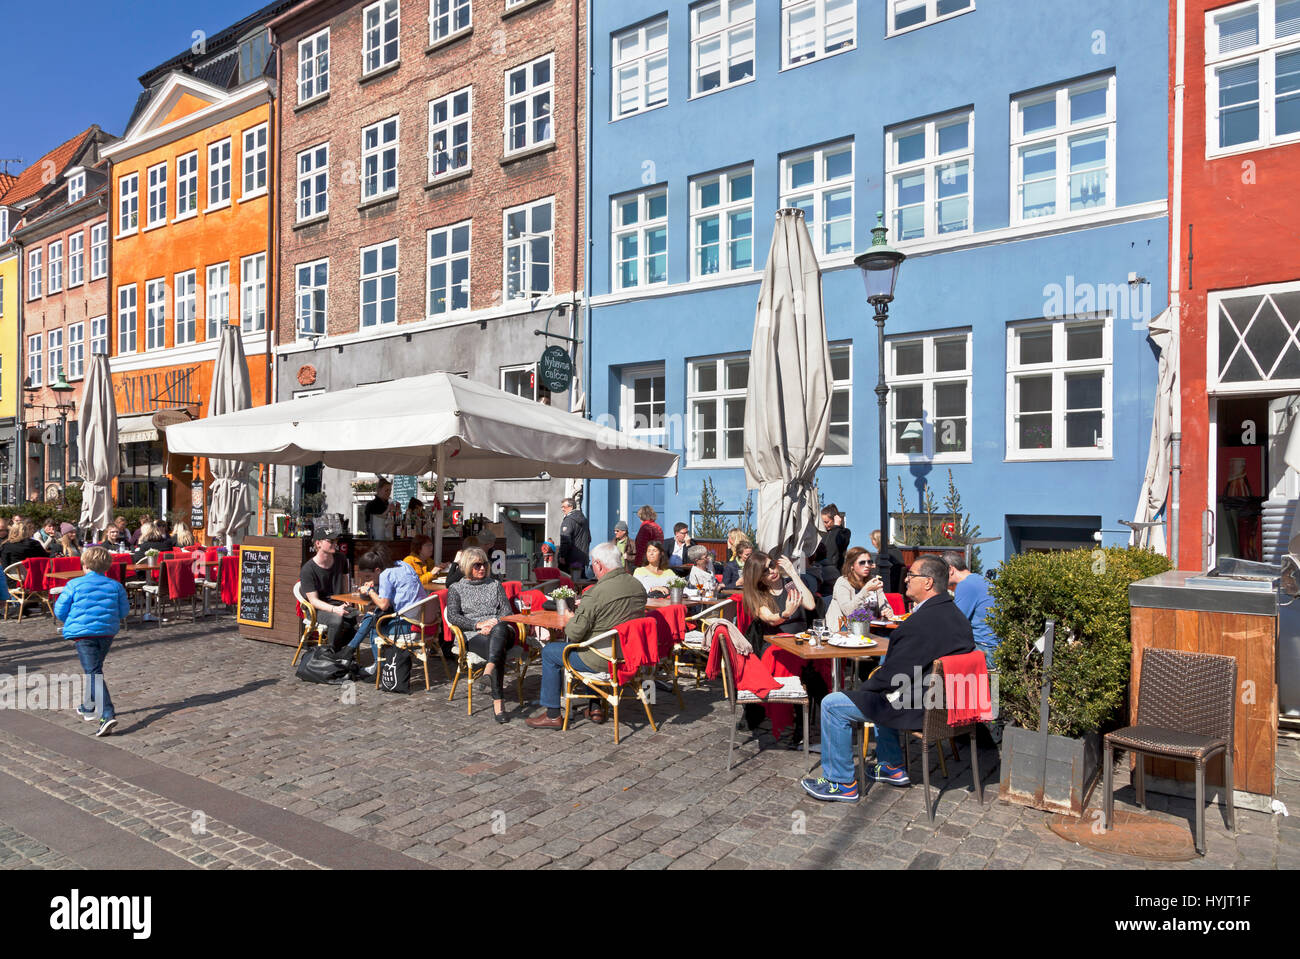 Die historischen Hafenrestaurants in Nyhavn, Kopenhagen, Dänemark, locken viele Kopenhagener und Touristen an einem sonnigen Frühlingstag Anfang April Stockfoto